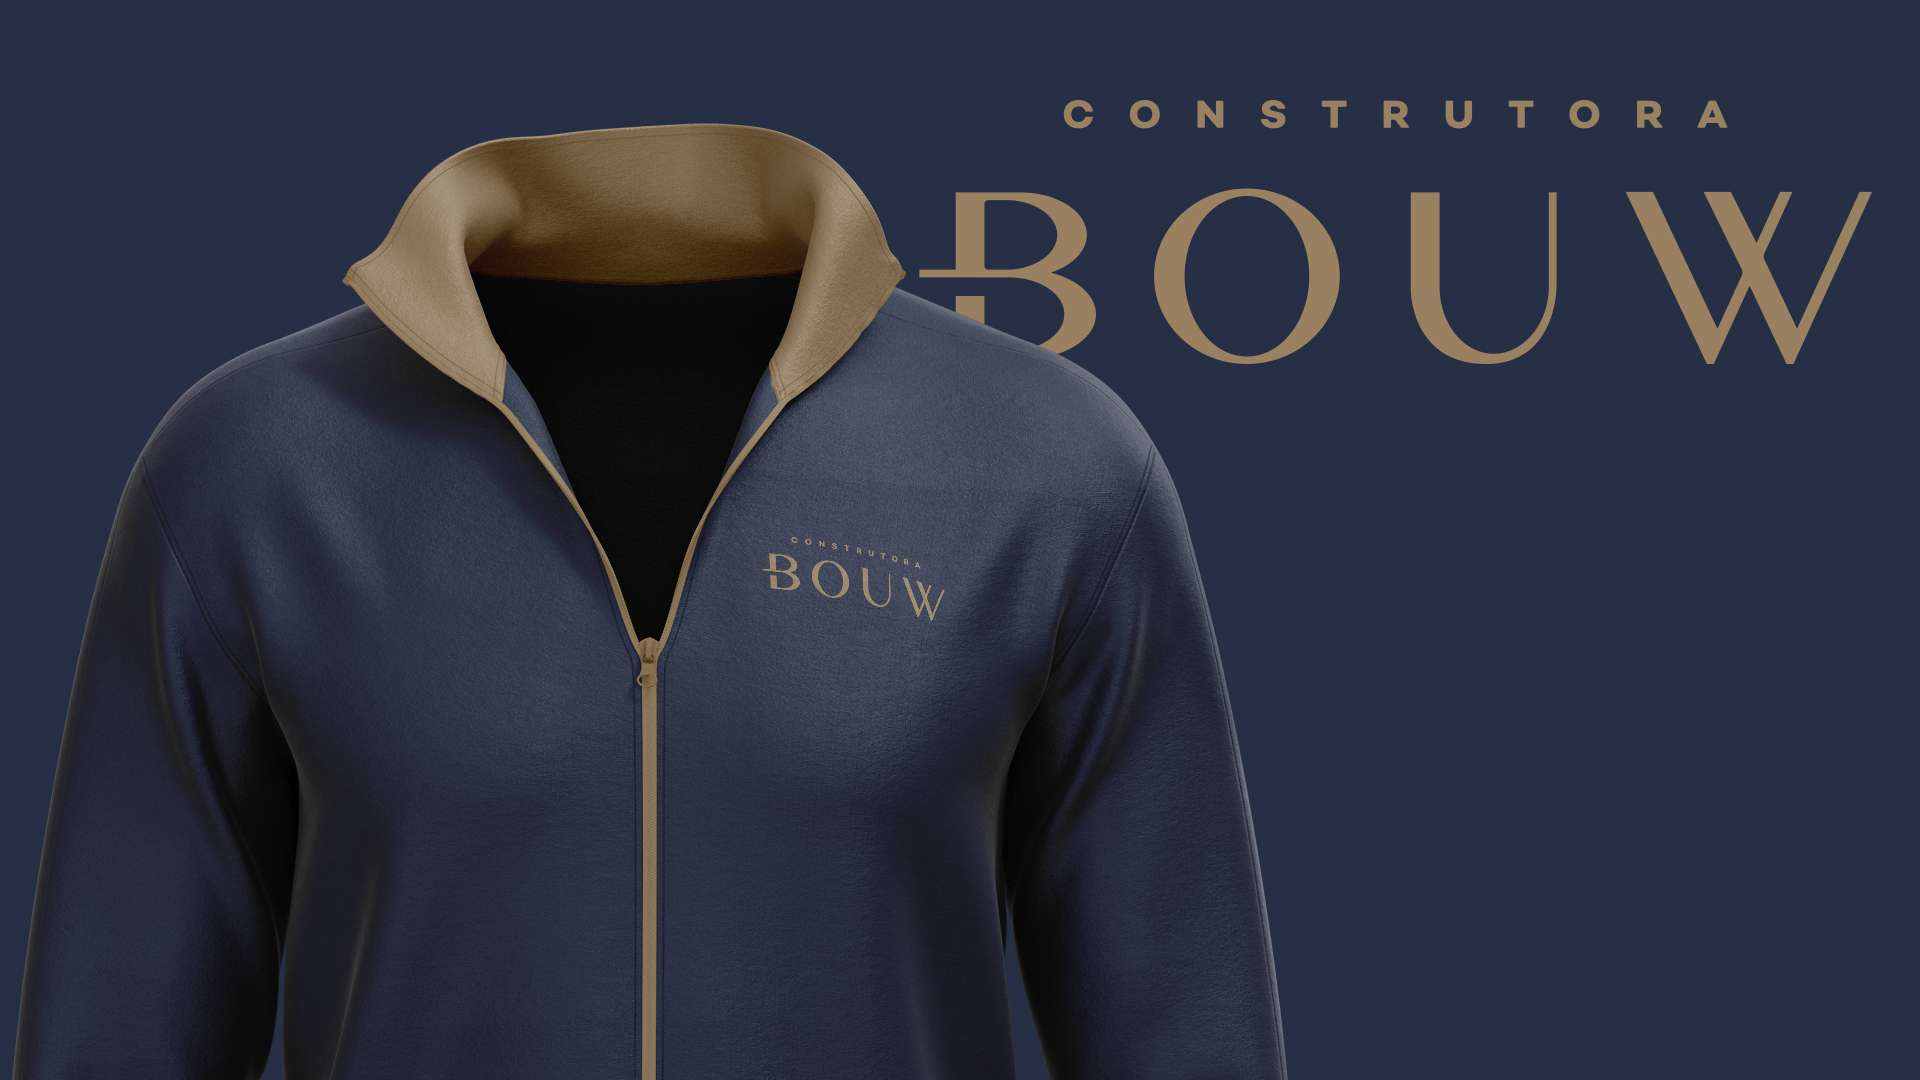 Reformulação de marca – Construtora Bouw